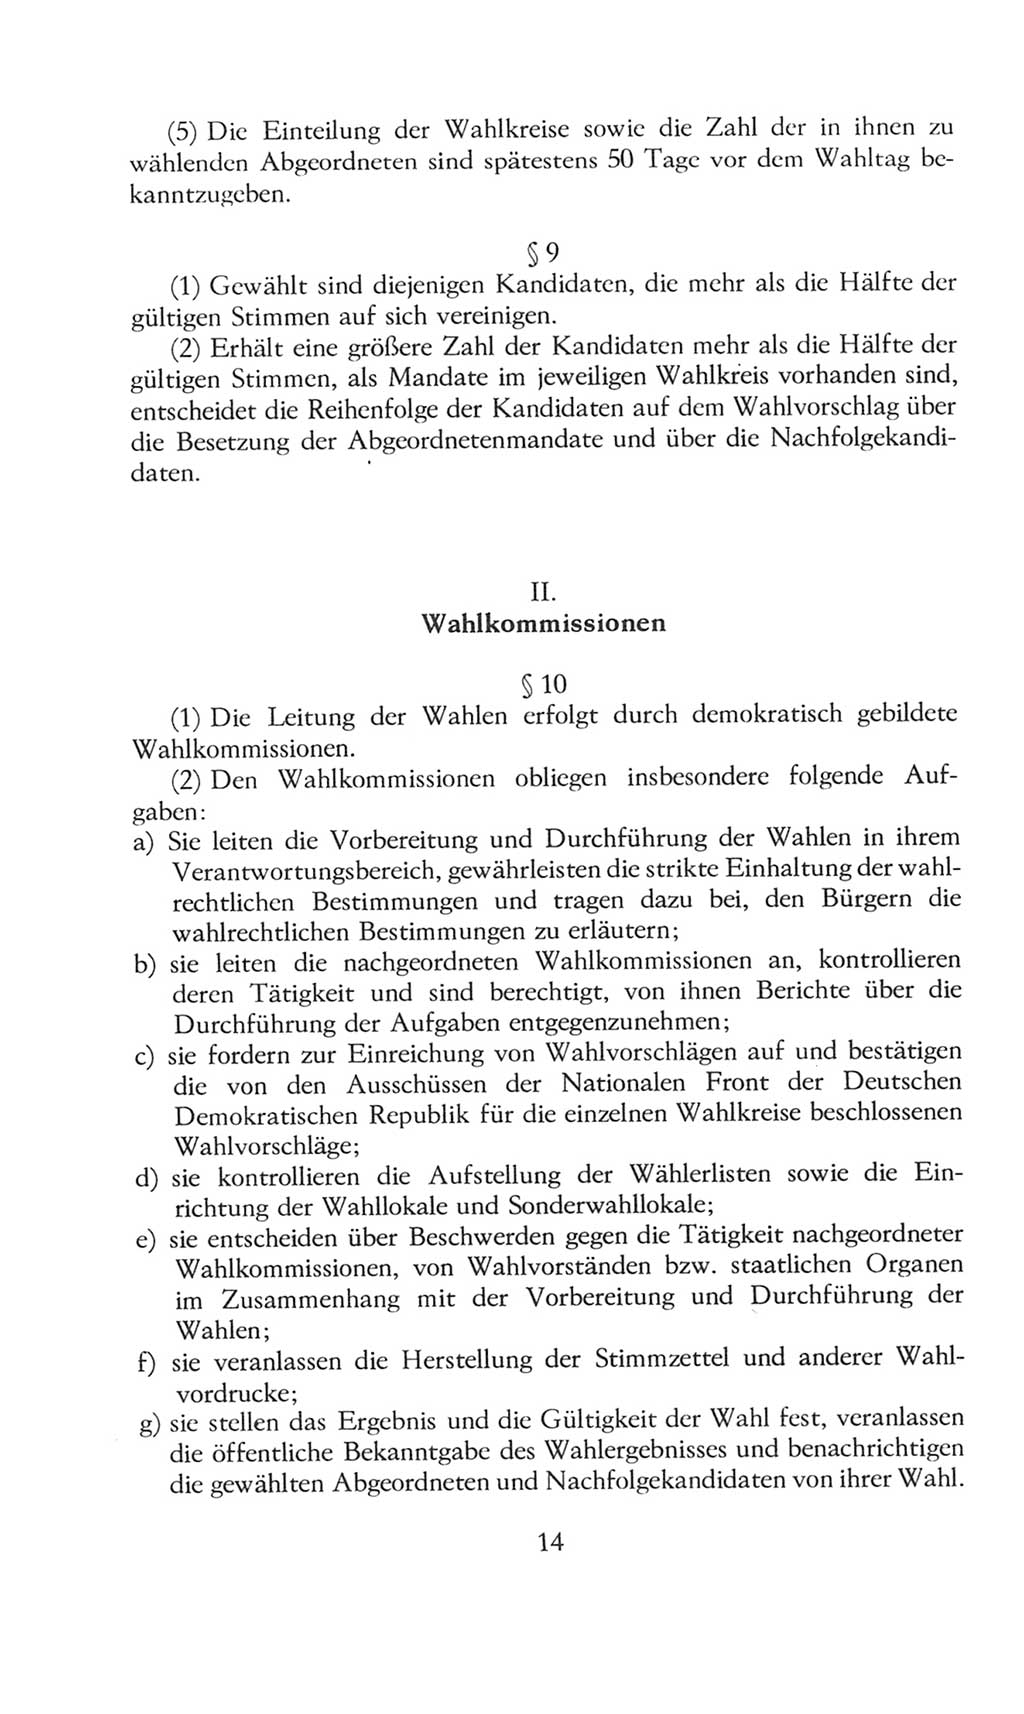 Volkskammer (VK) der Deutschen Demokratischen Republik (DDR), 8. Wahlperiode 1981-1986, Seite 14 (VK. DDR 8. WP. 1981-1986, S. 14)